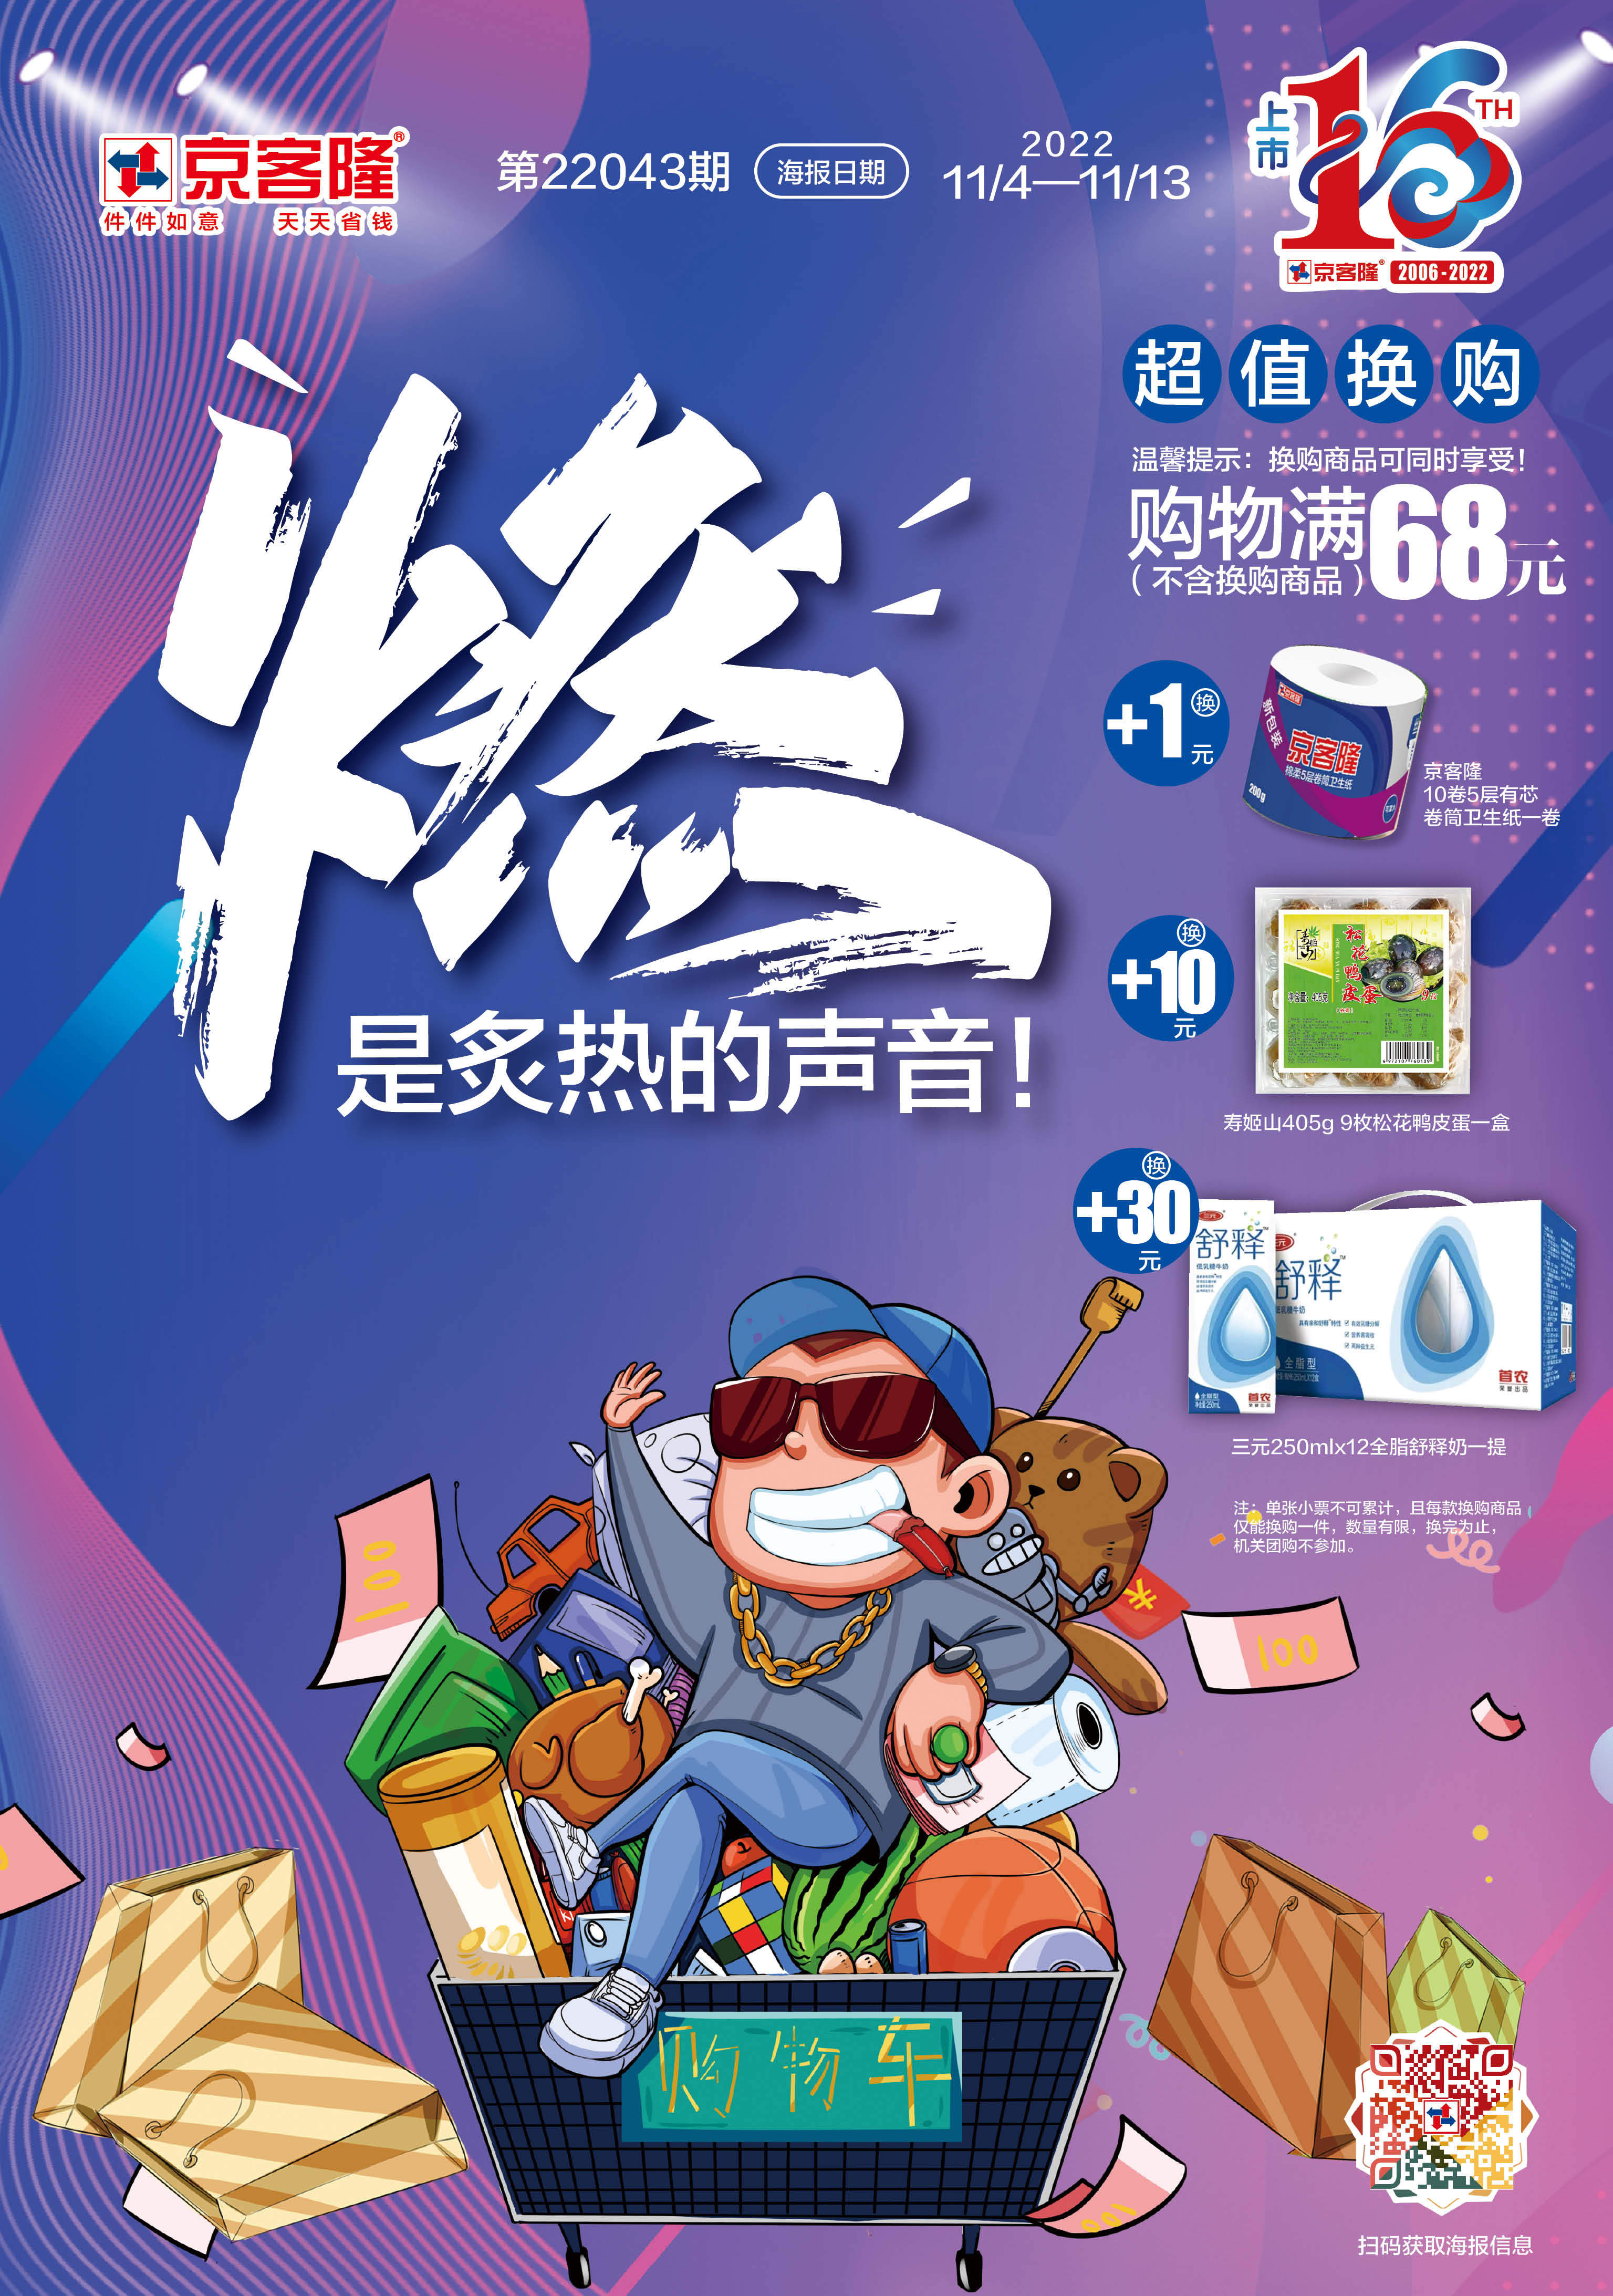 北京京客隆超市促销海报（第22043期）